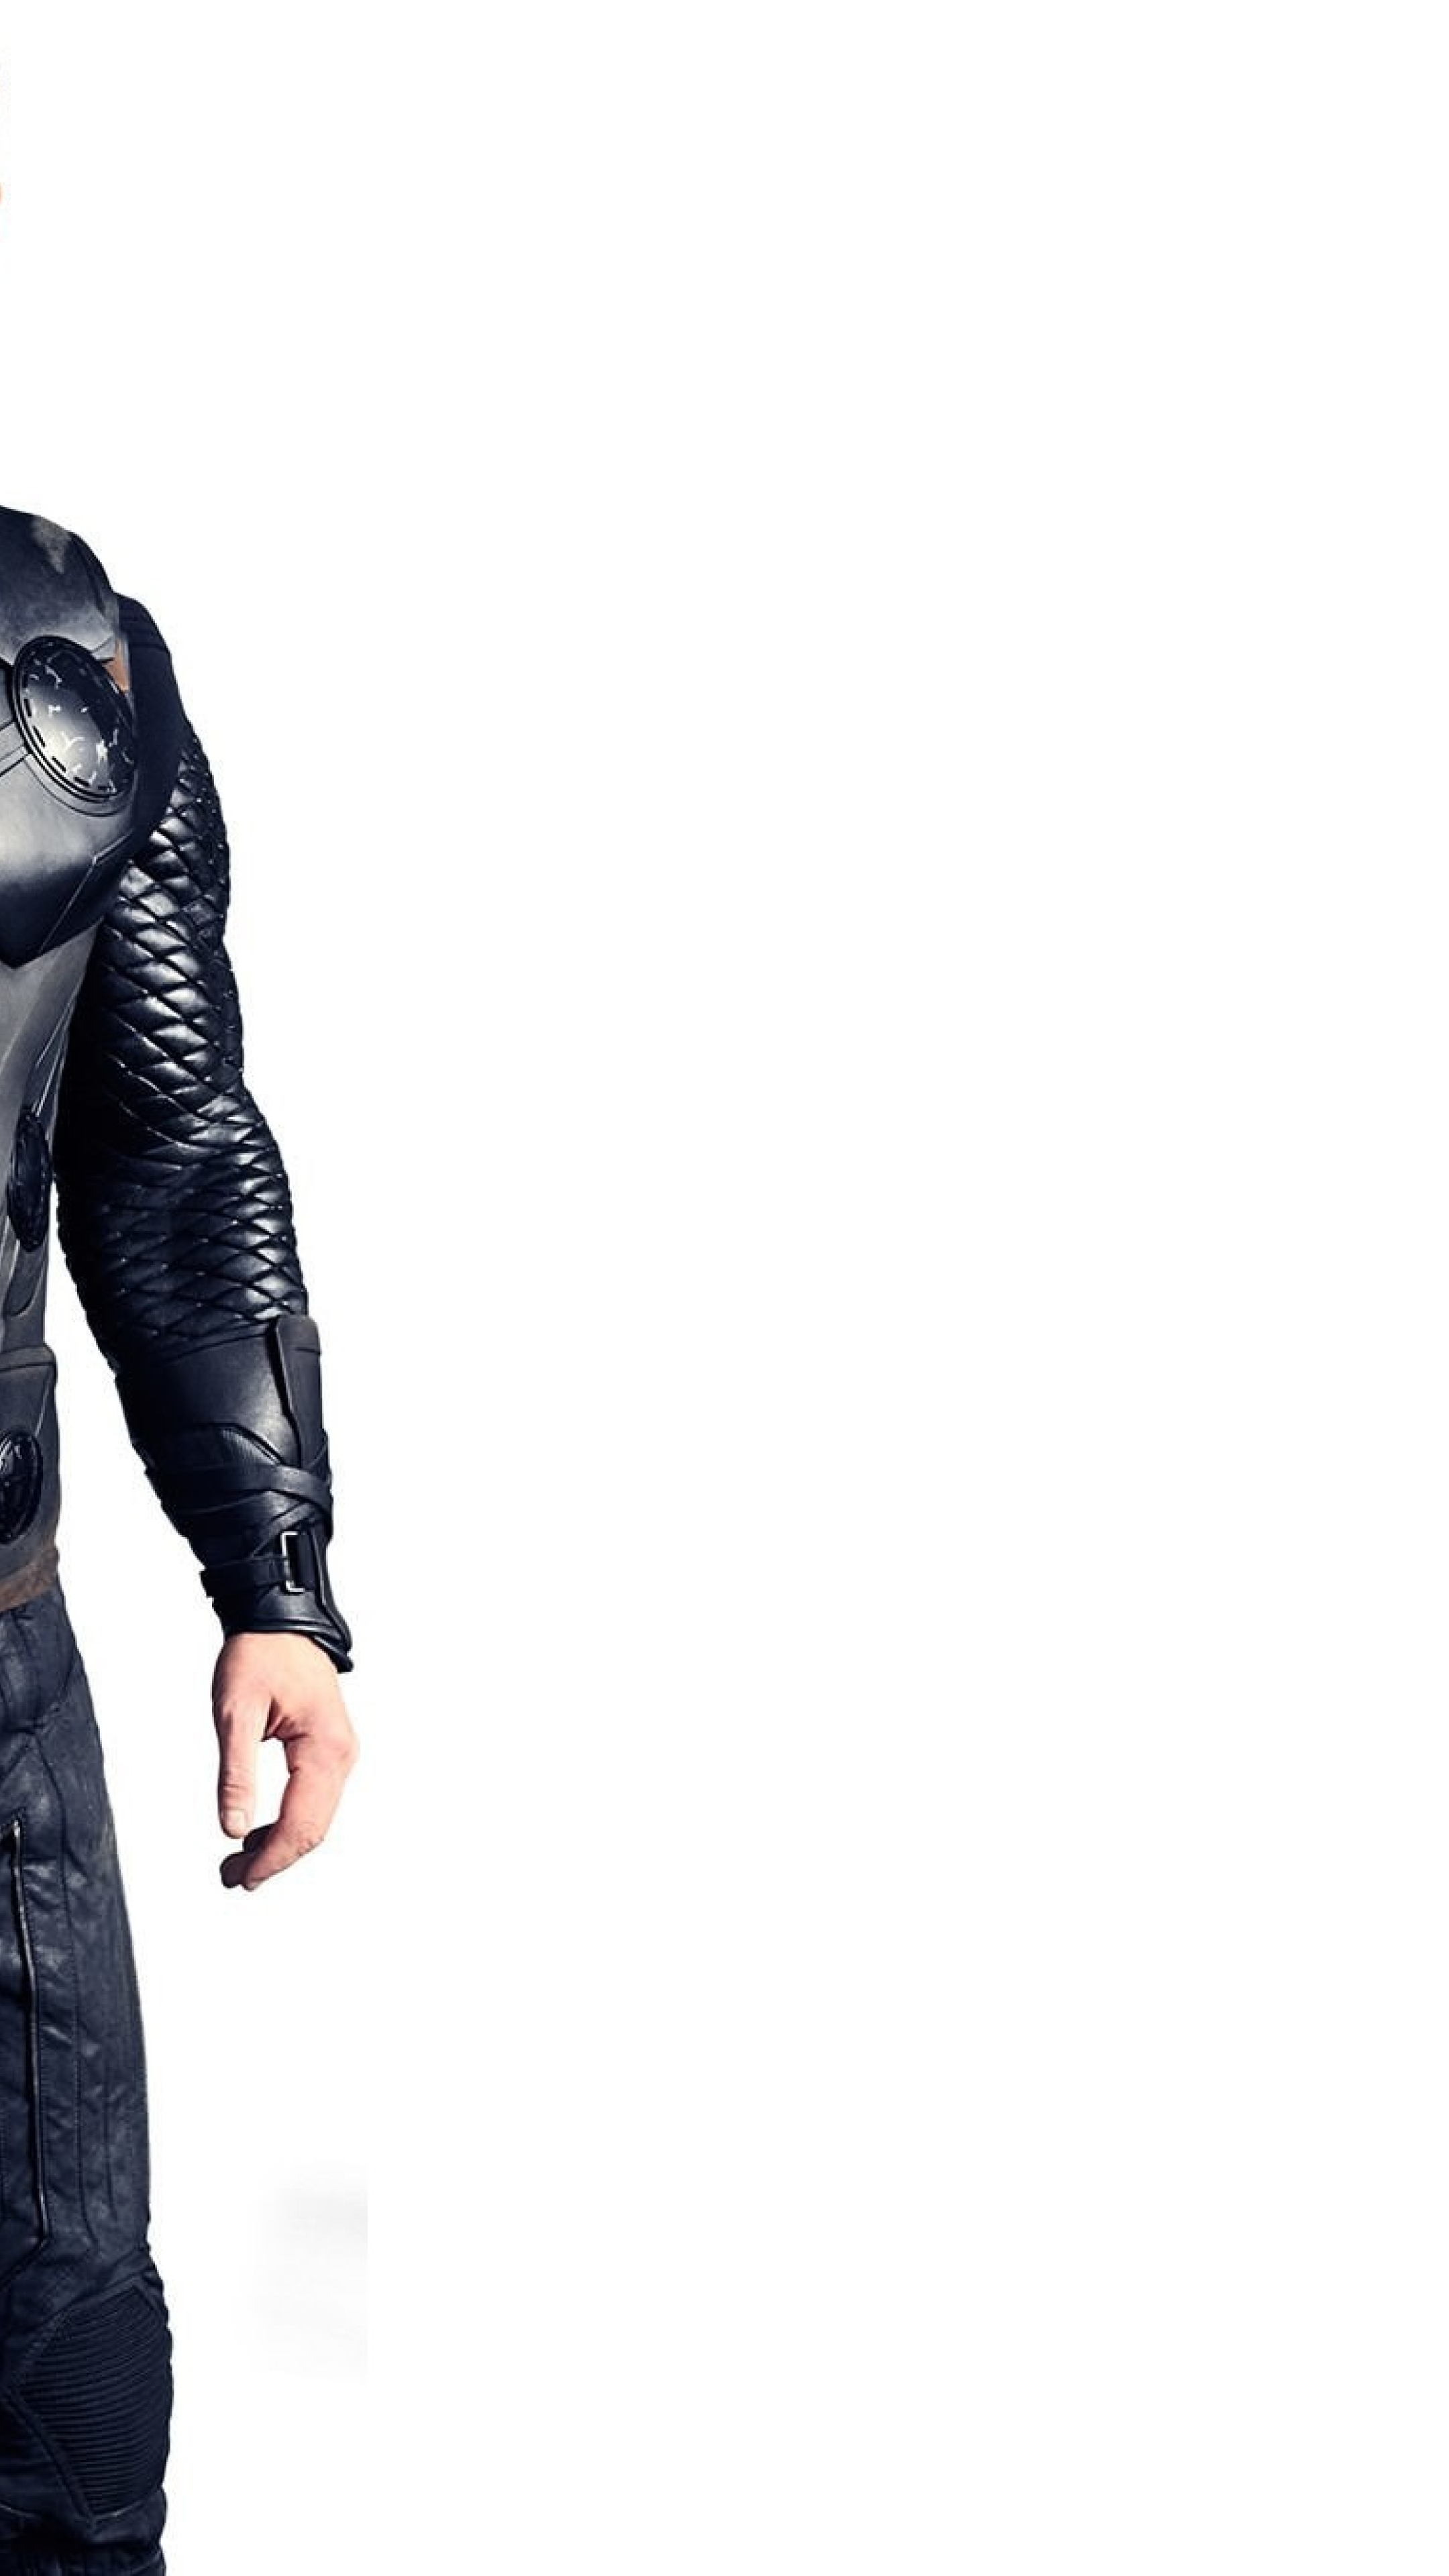 Chris Hemsworth As Thor In Avengers, Full HD 2K Wallpaper